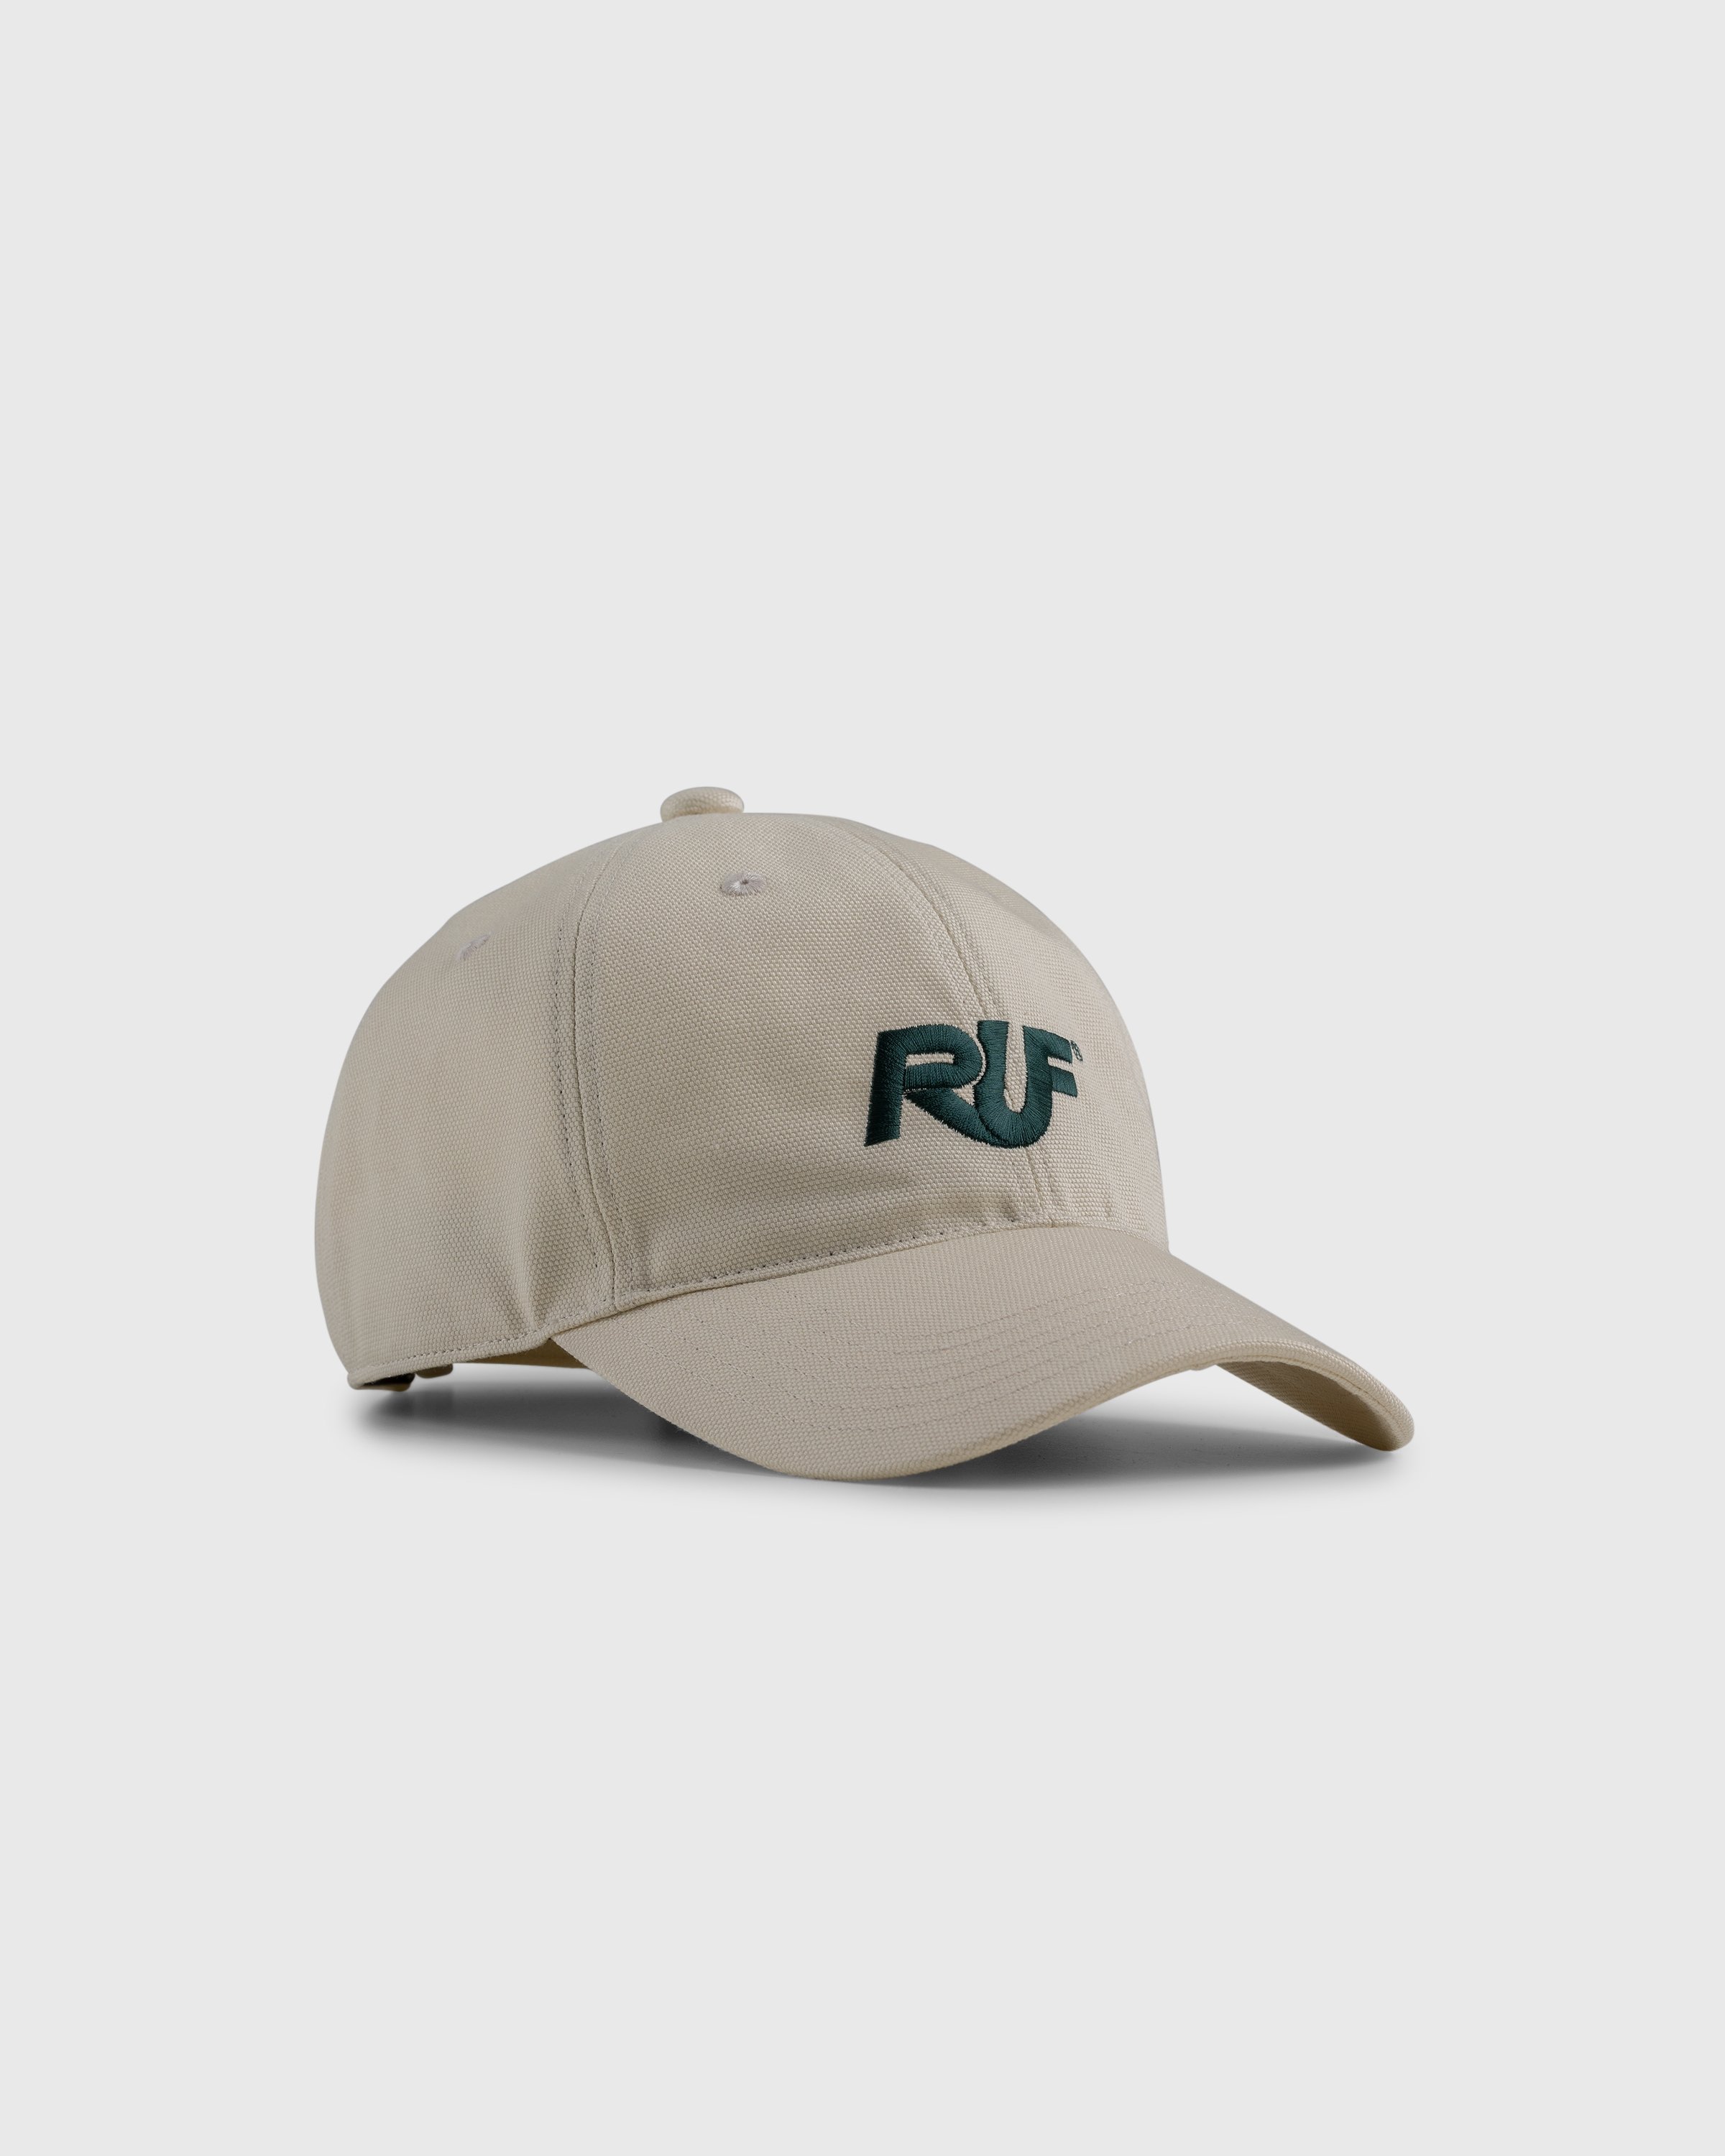 RUF x Highsnobiety - Logo Cap Natural - Accessories - Beige - Image 1